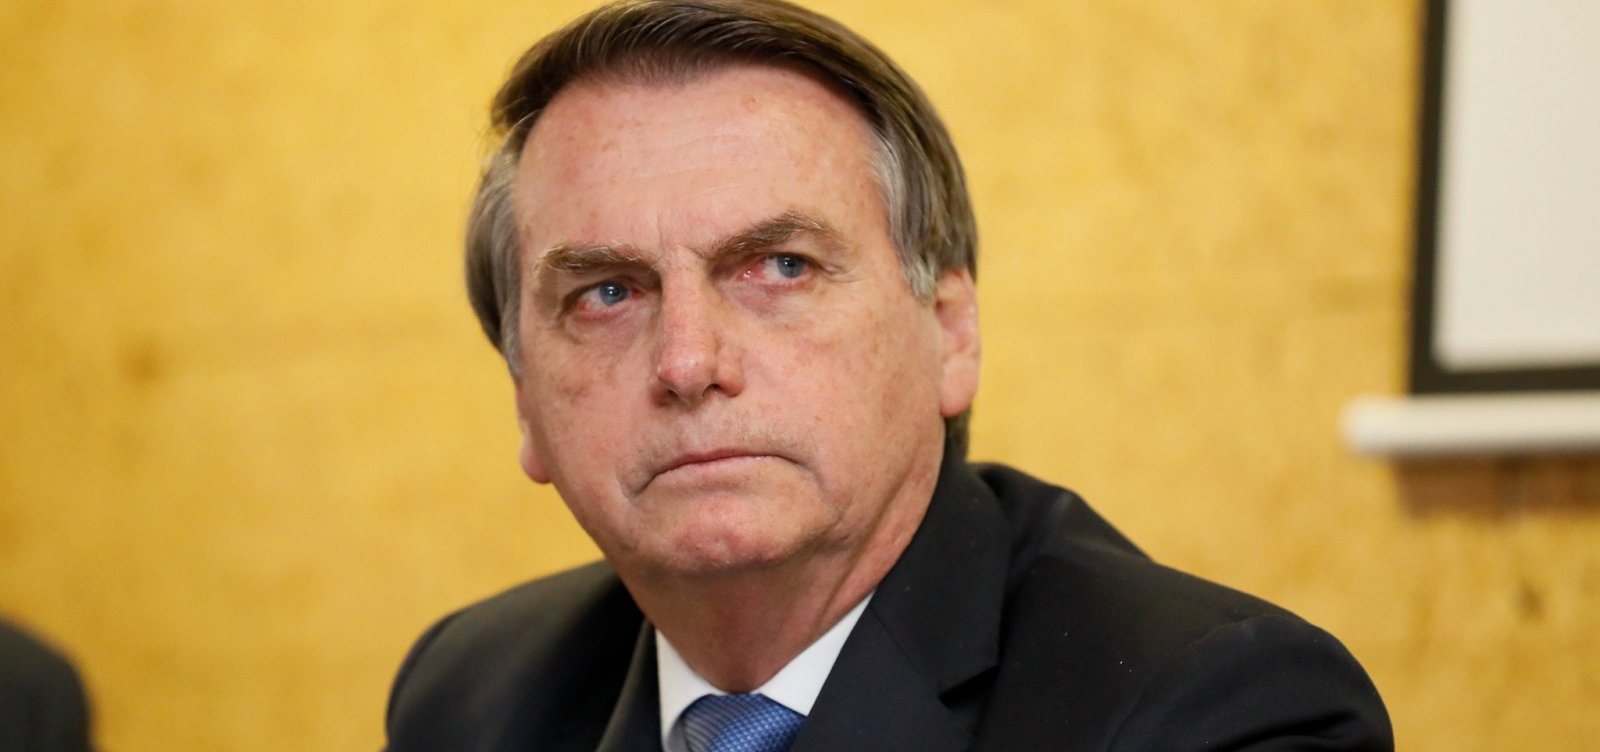 'É opinião dele e ele tem razão', diz Bolsonaro sobre tweet de Carlos